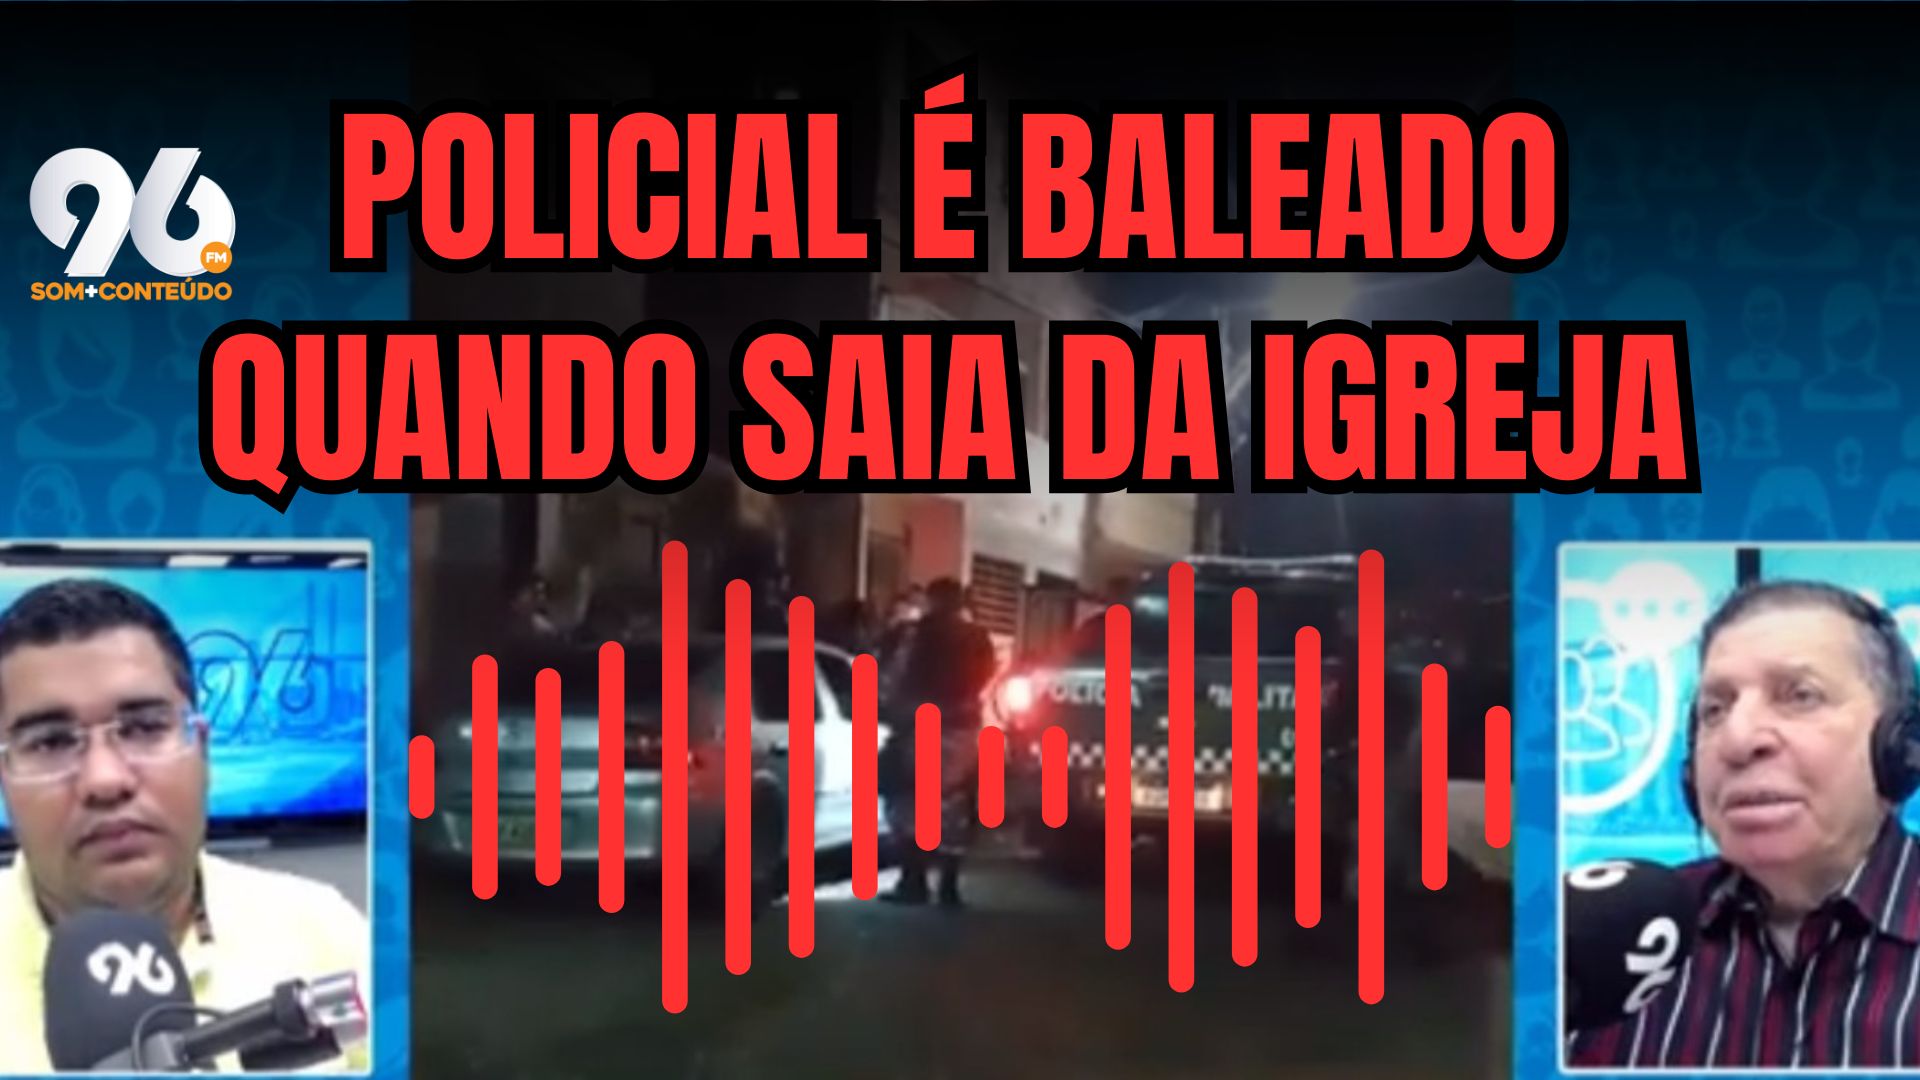 [VIDEO] PM baleado quando saia de igreja em Felipe Camarão grava áudio pedindo socorro